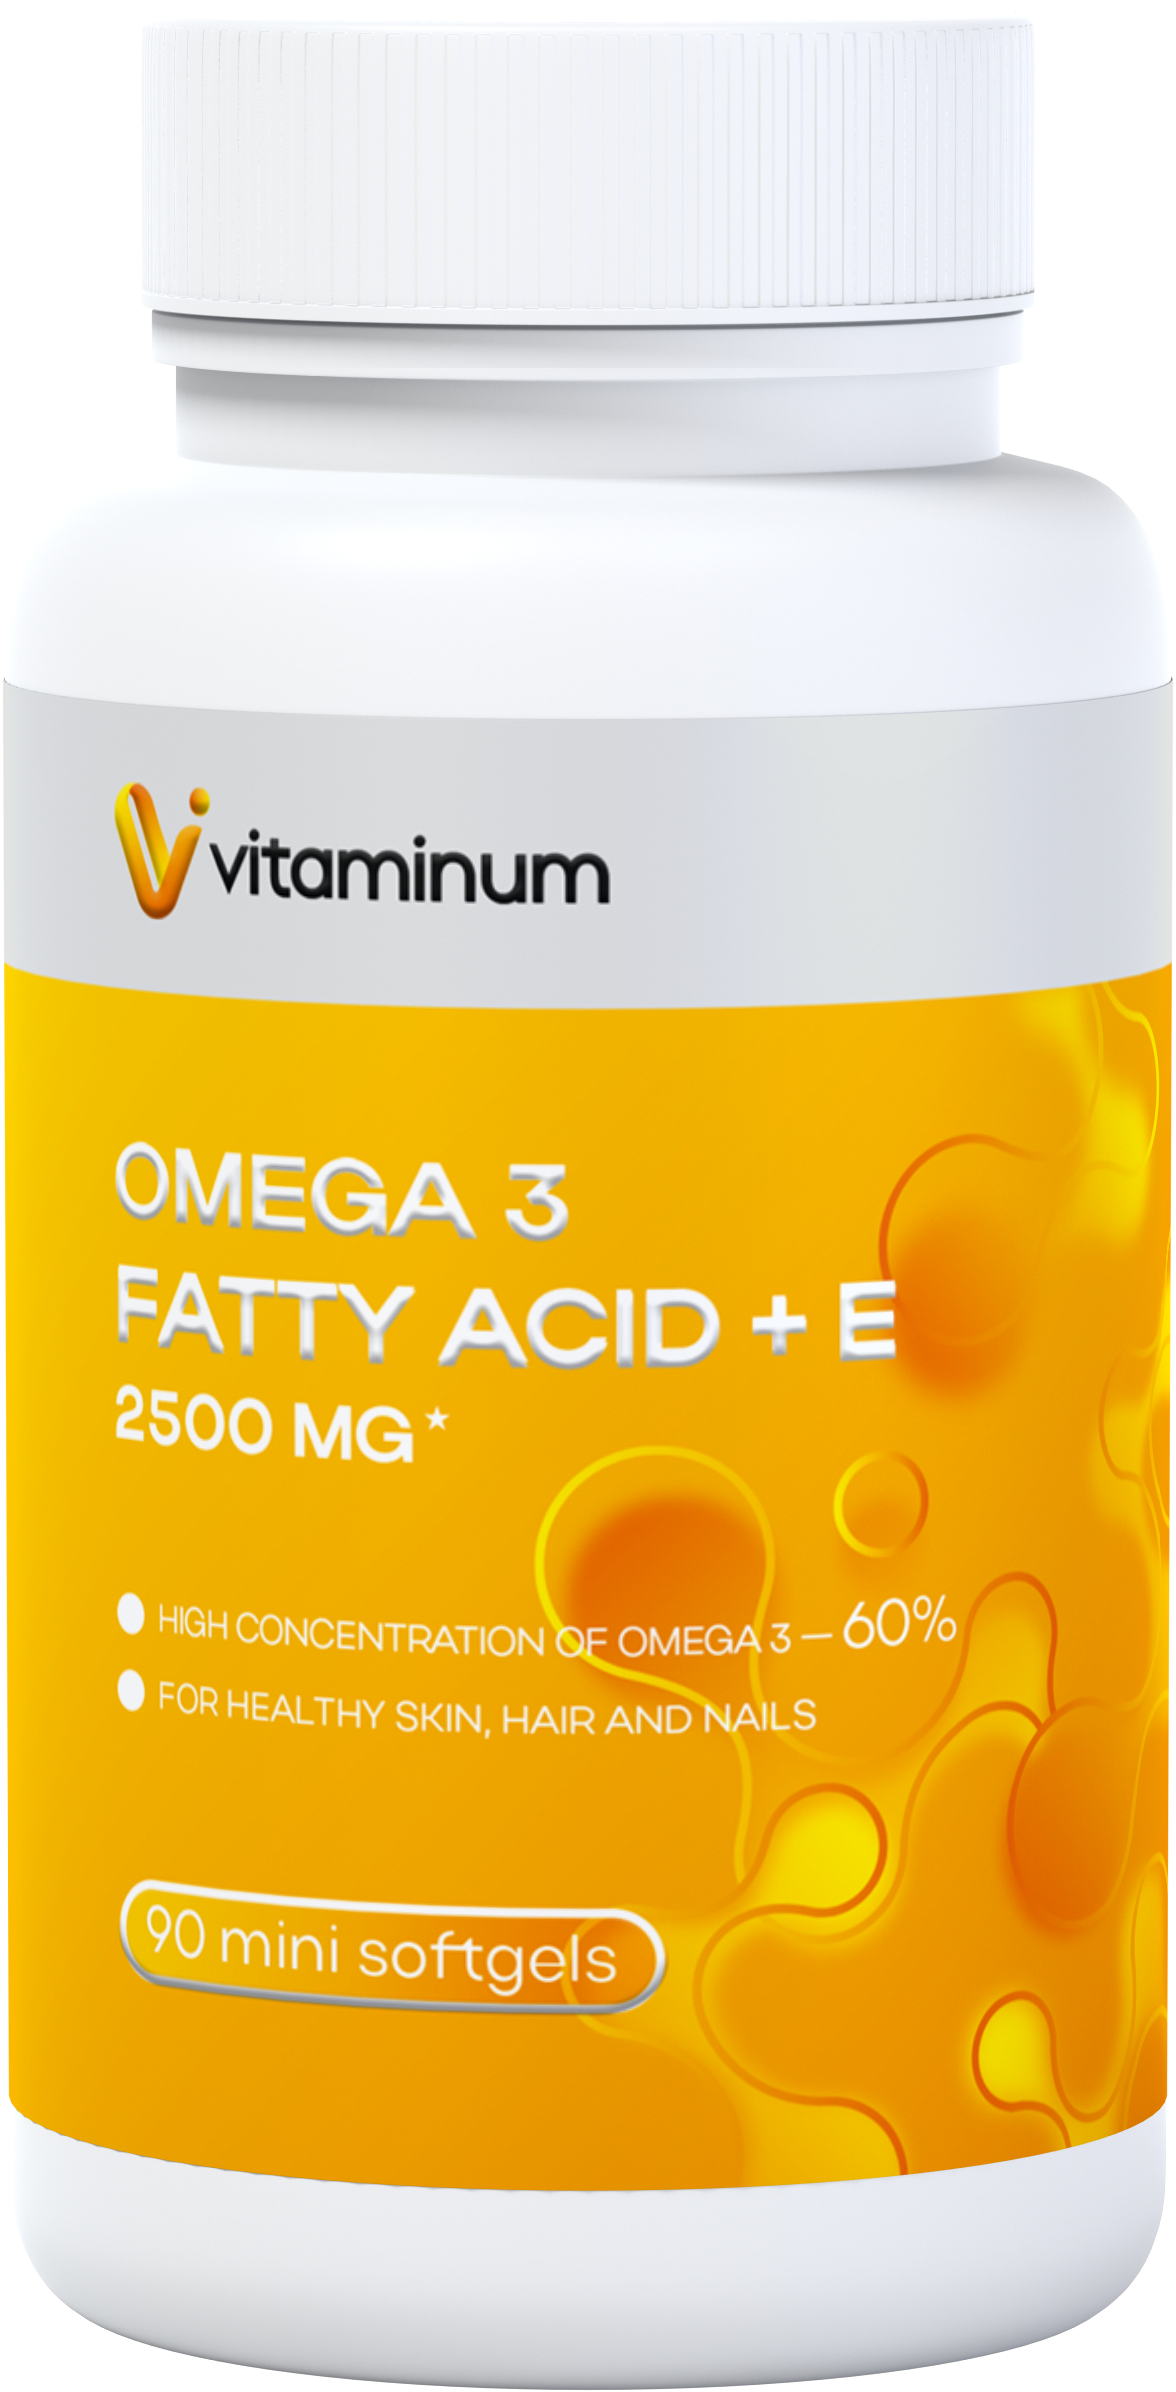  Vitaminum ОМЕГА 3 60% + витамин Е (2500 MG*) 90 капсул 700 мг   в Белогорске